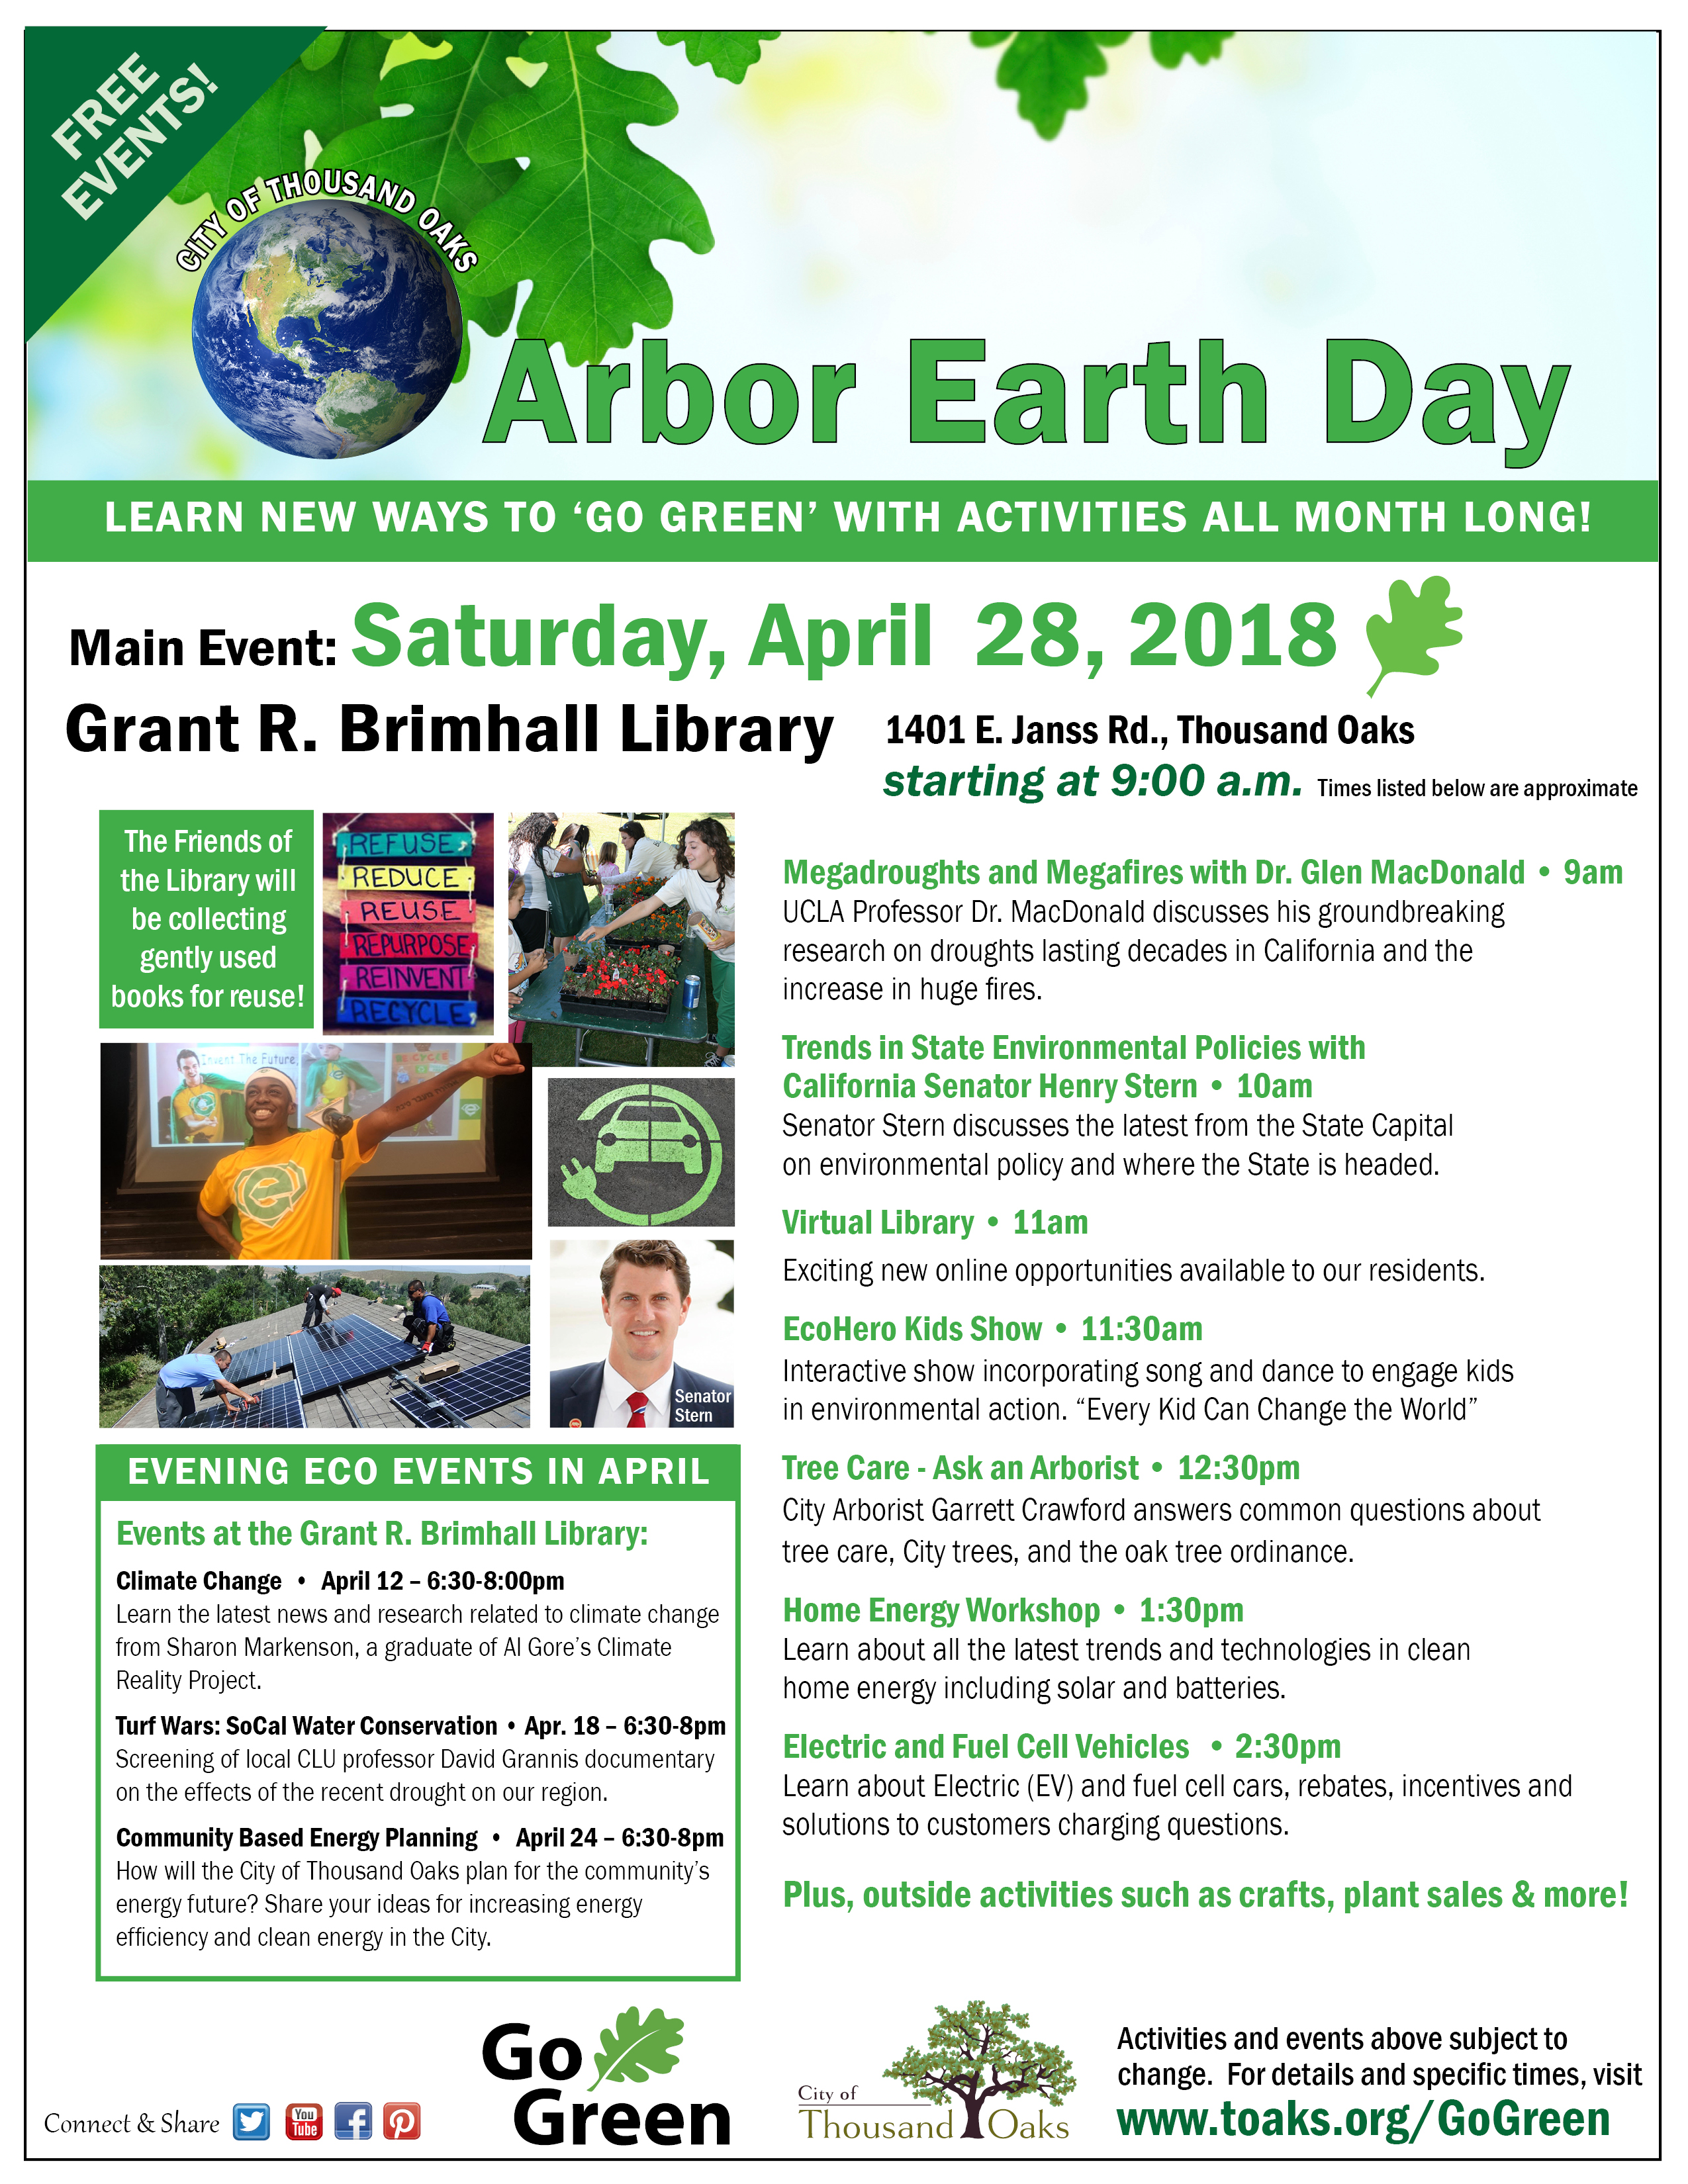 Thousand Oaks Arbor Earth Day Flier